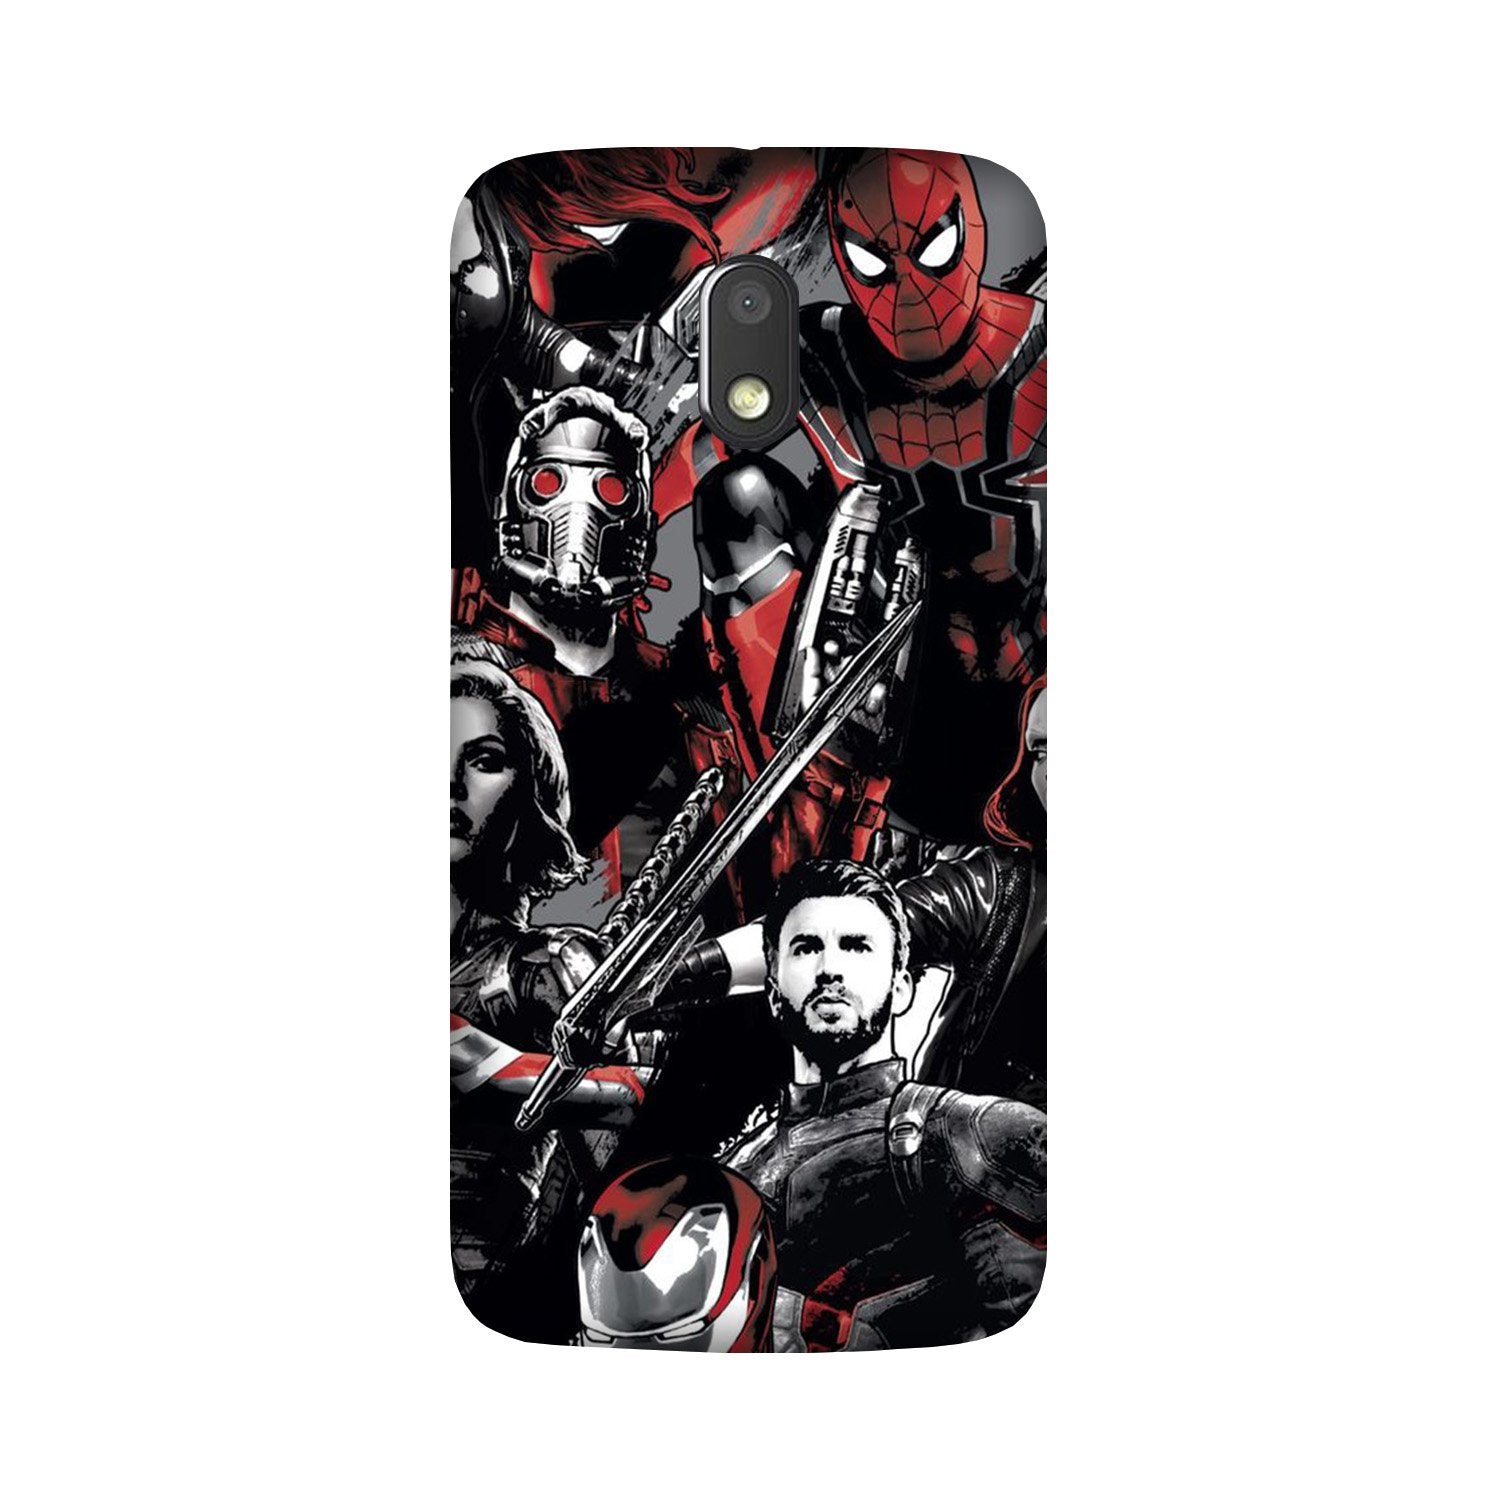 Avengers Case for Moto G4 Play (Design - 190)